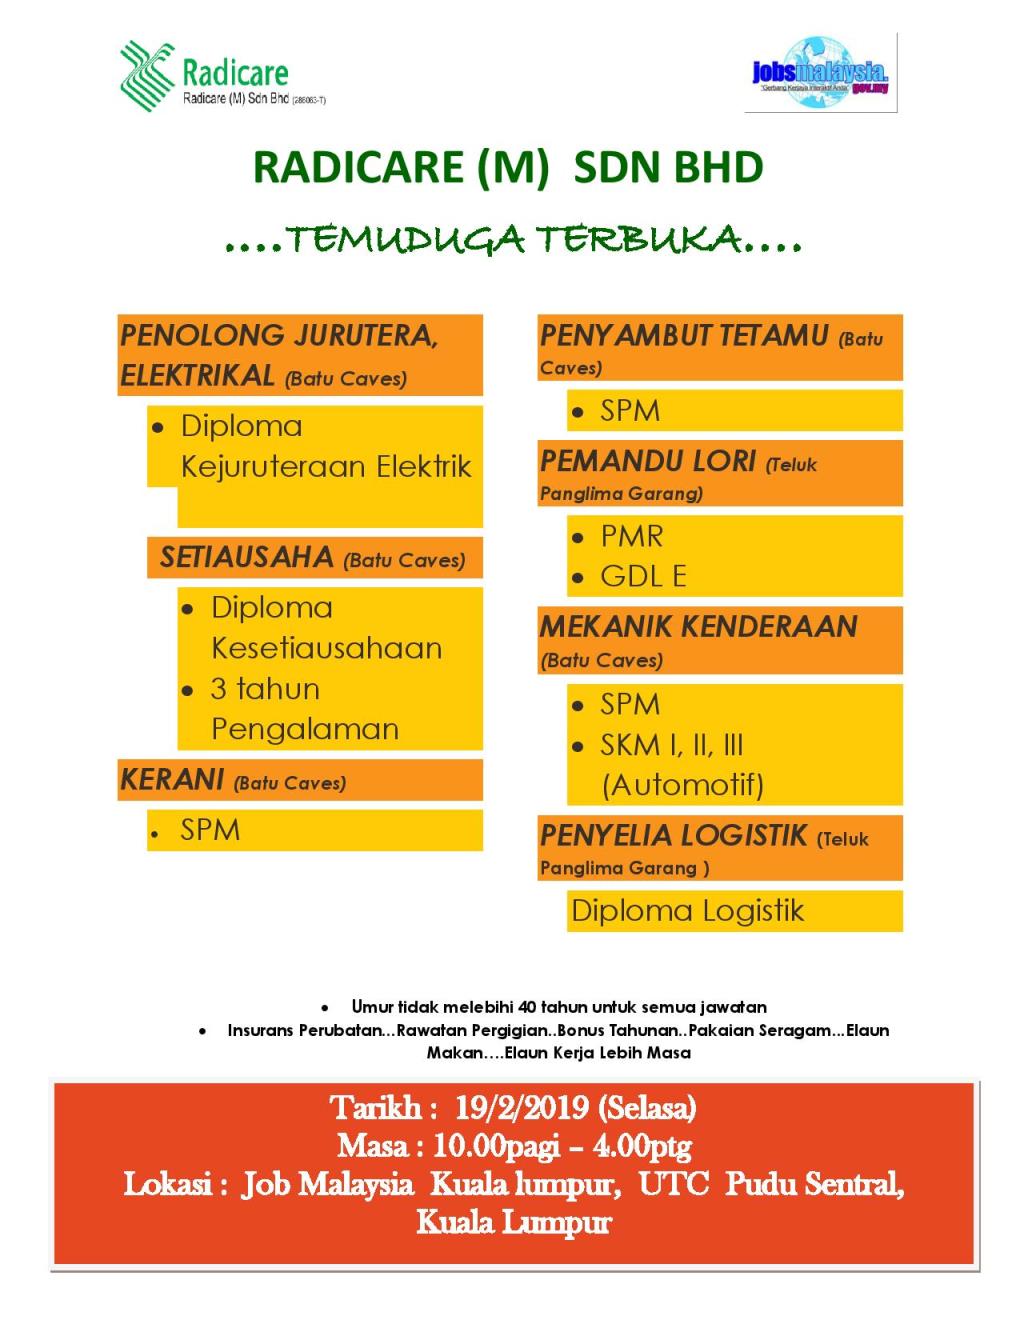 Temuduga Terbuka di Radicare (M) Sdn Bhd - 19 Februari 